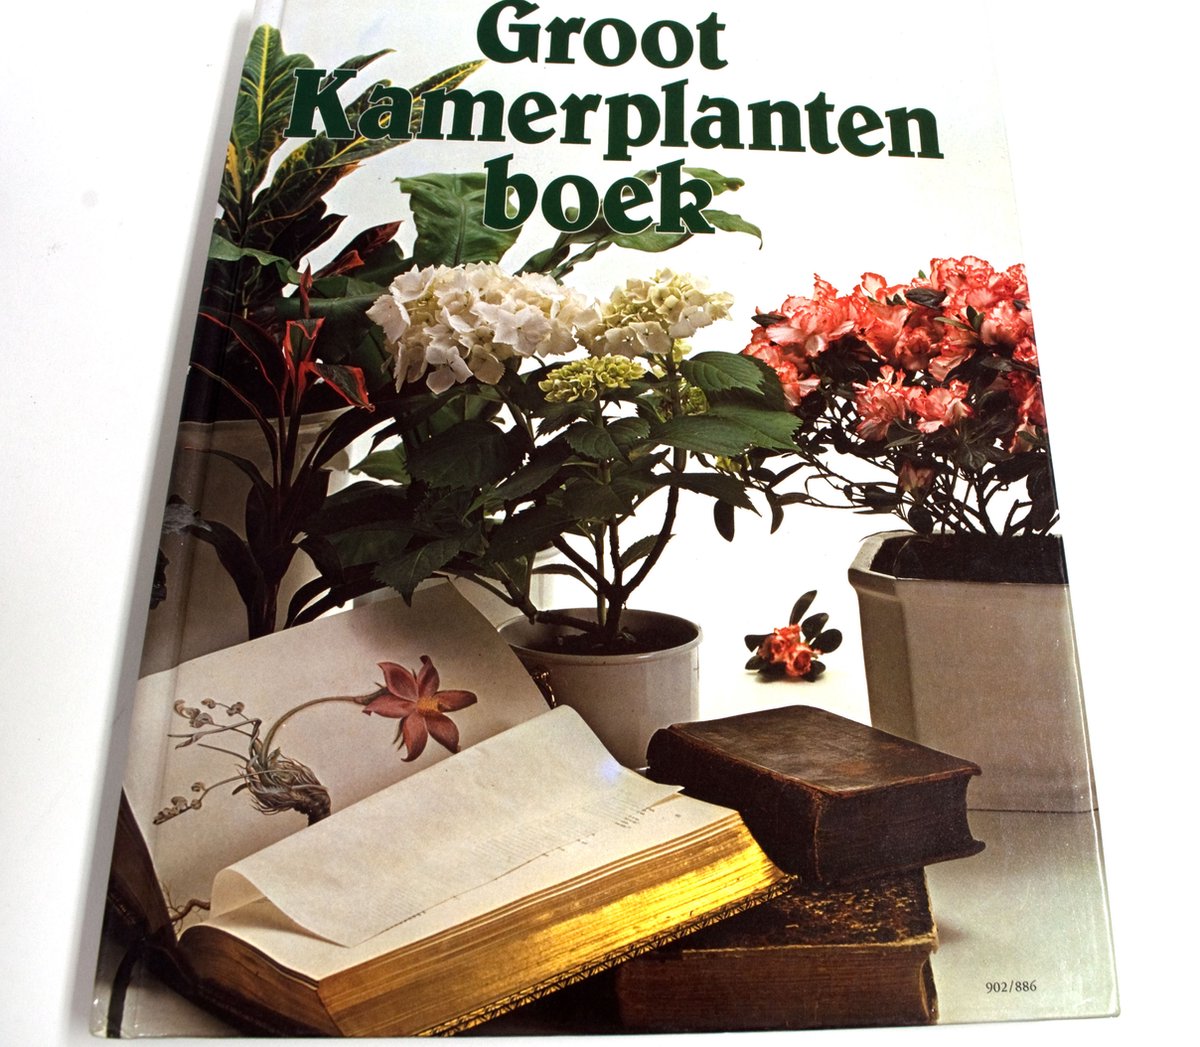 Het groot kamerplantenboek